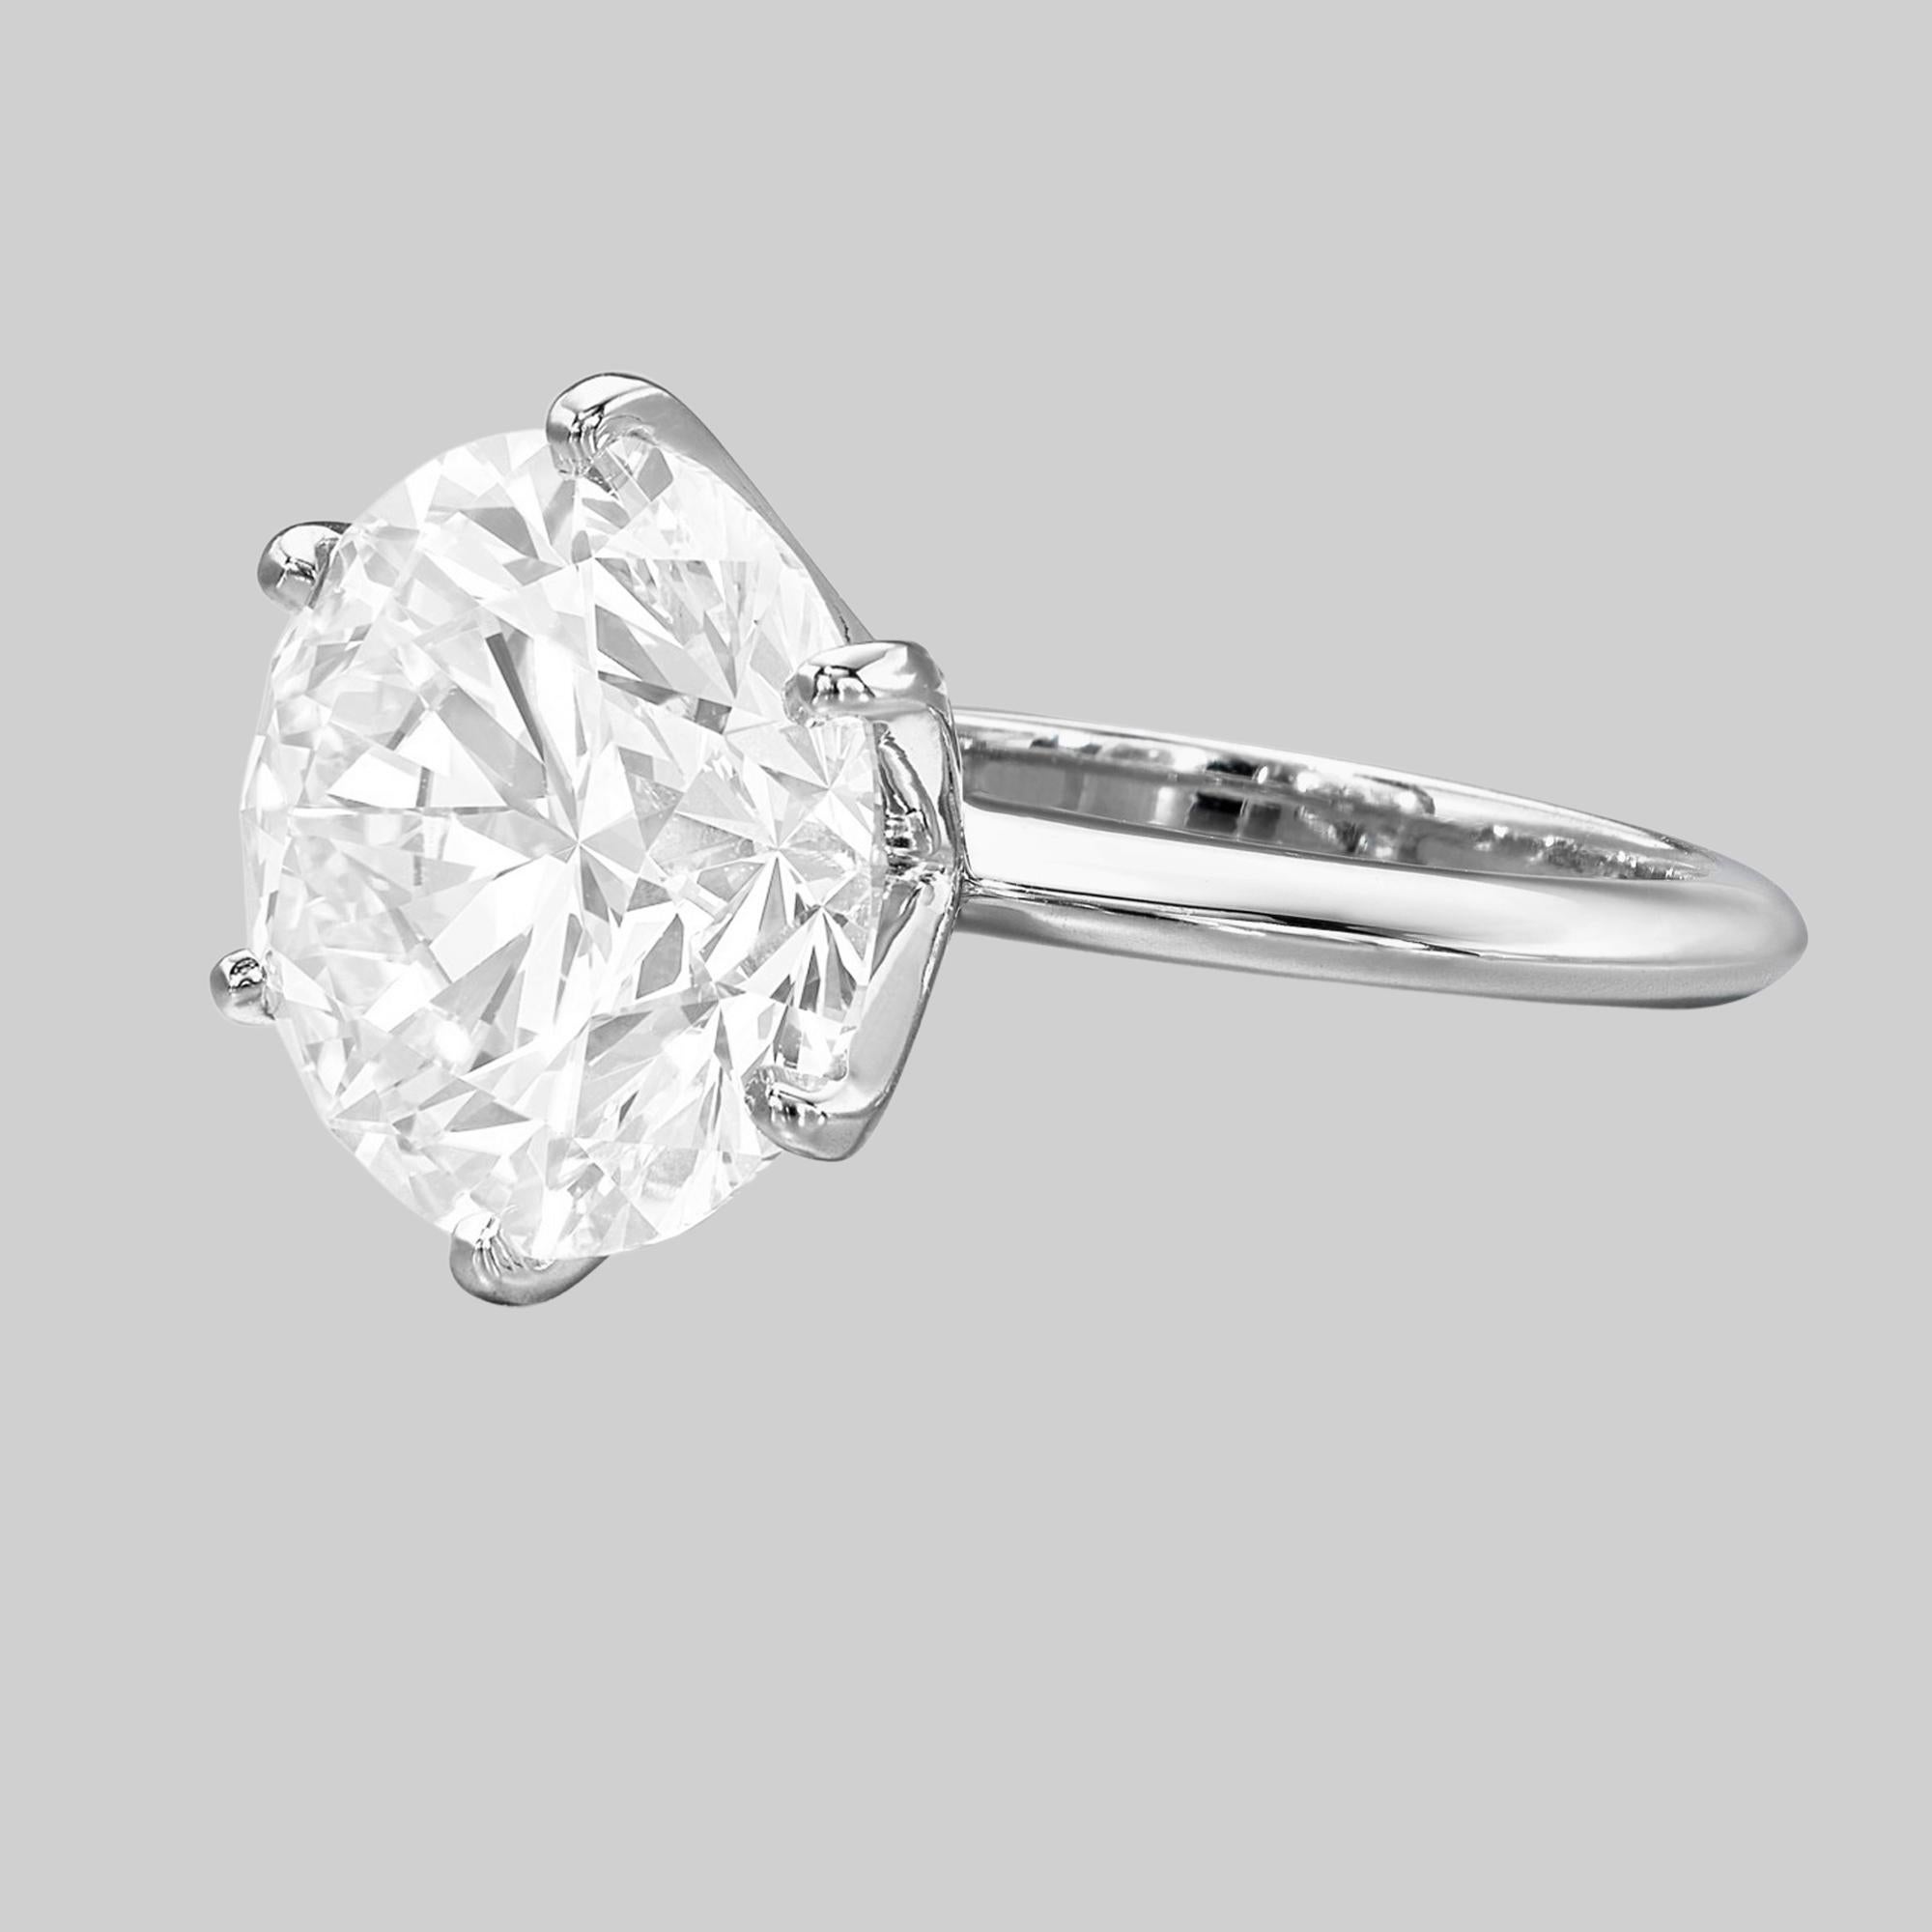 Tiffany & Co. 2.10 ct Gesamtgewicht Platin Rund Brillantschliff Diamant Solitär Verlobungsring. 

Der Ring wiegt 5,7 Gramm, Größe 5,5 (passt zu den meisten Fingergrößen), der Mittelstein ist ein 2,1 ct Natural Round Brilliant Cut Diamant, I in der